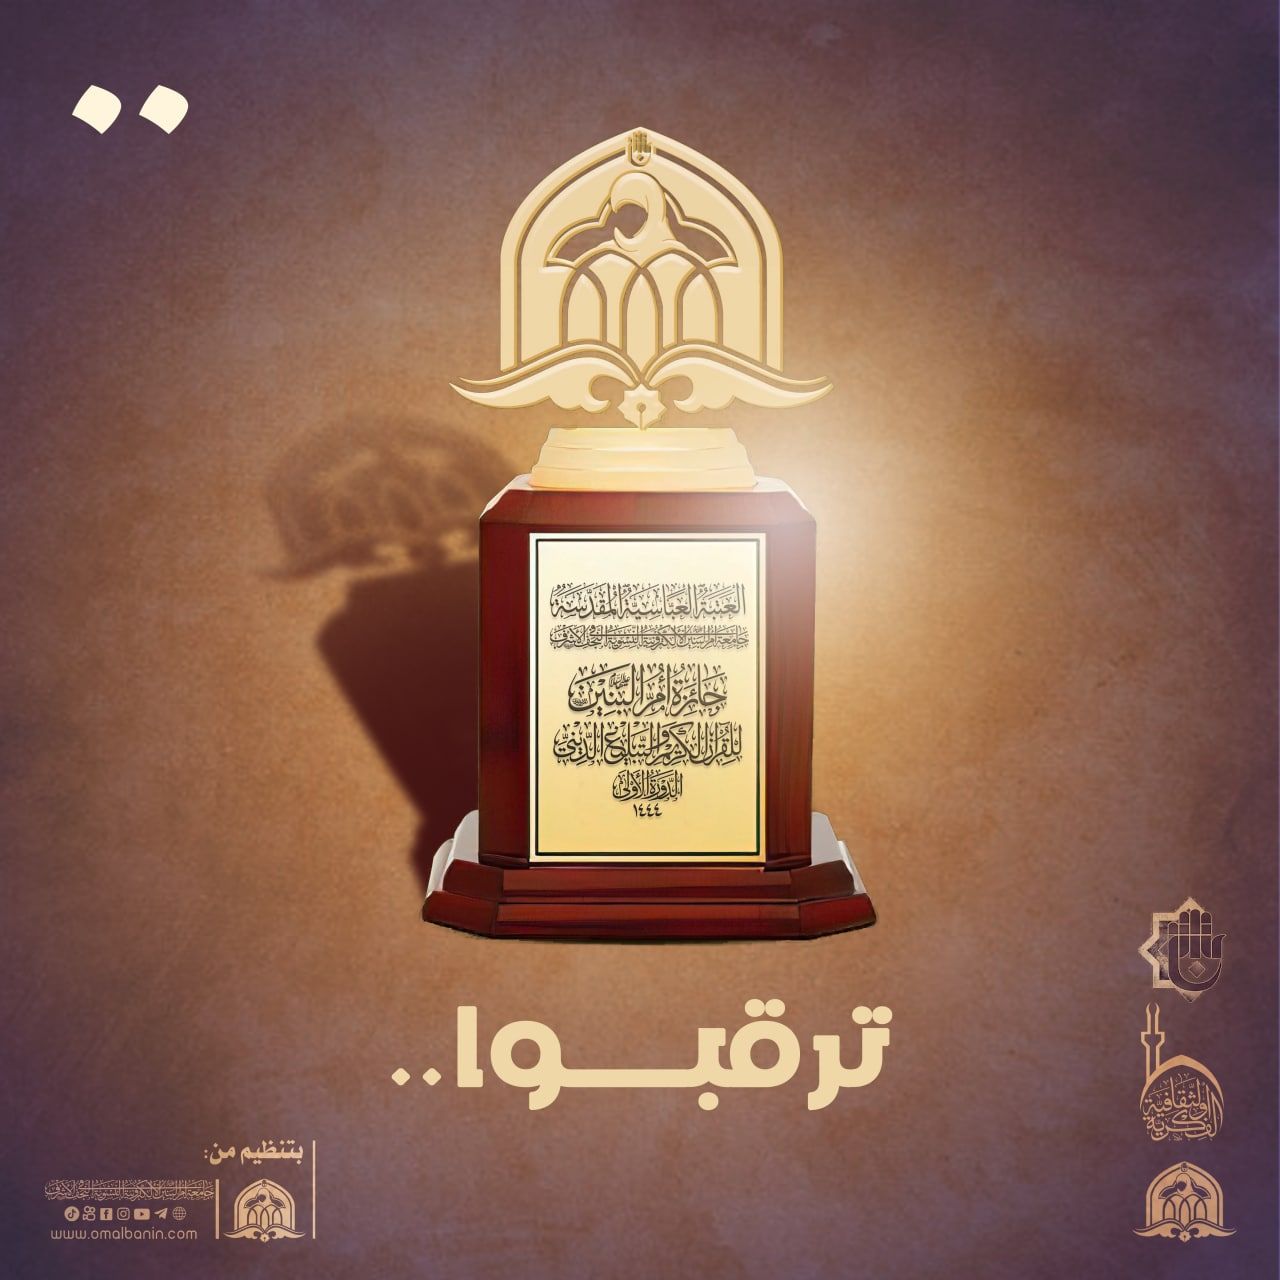 جامعة أم البنين (عليه السلام) الإلكترونيّة النسويّة تنهي استعداداتها لإطلاق جائزتها الأولى في القرآن الكريم والتبليغ الديني